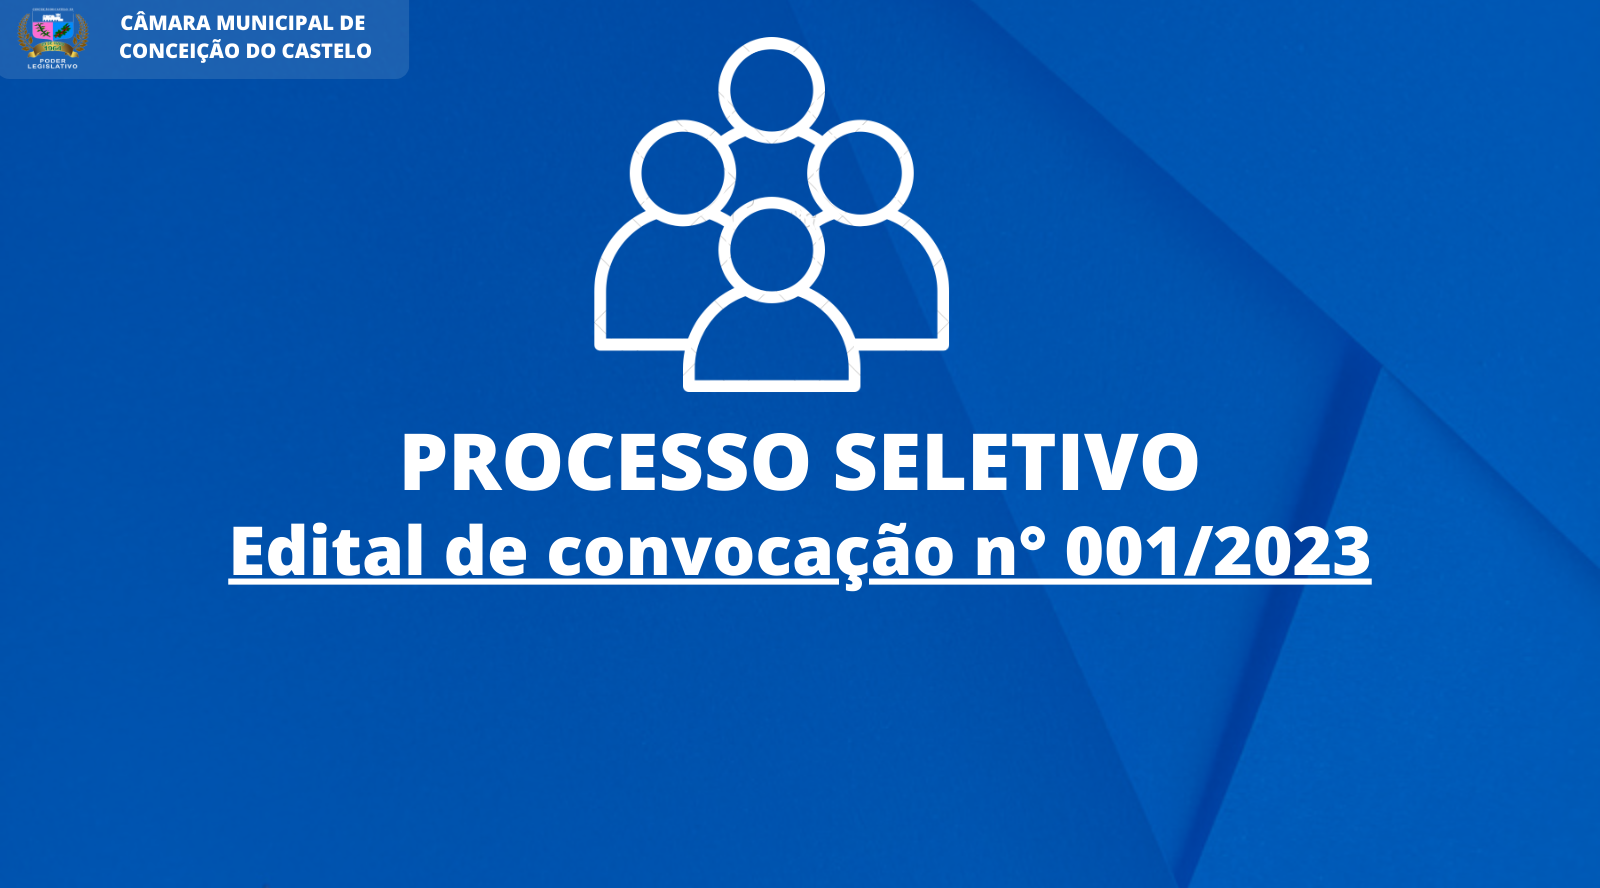 Edital de Convocação nº 001/2023 - Processo Seletivo Simplificado nº 001/2023.